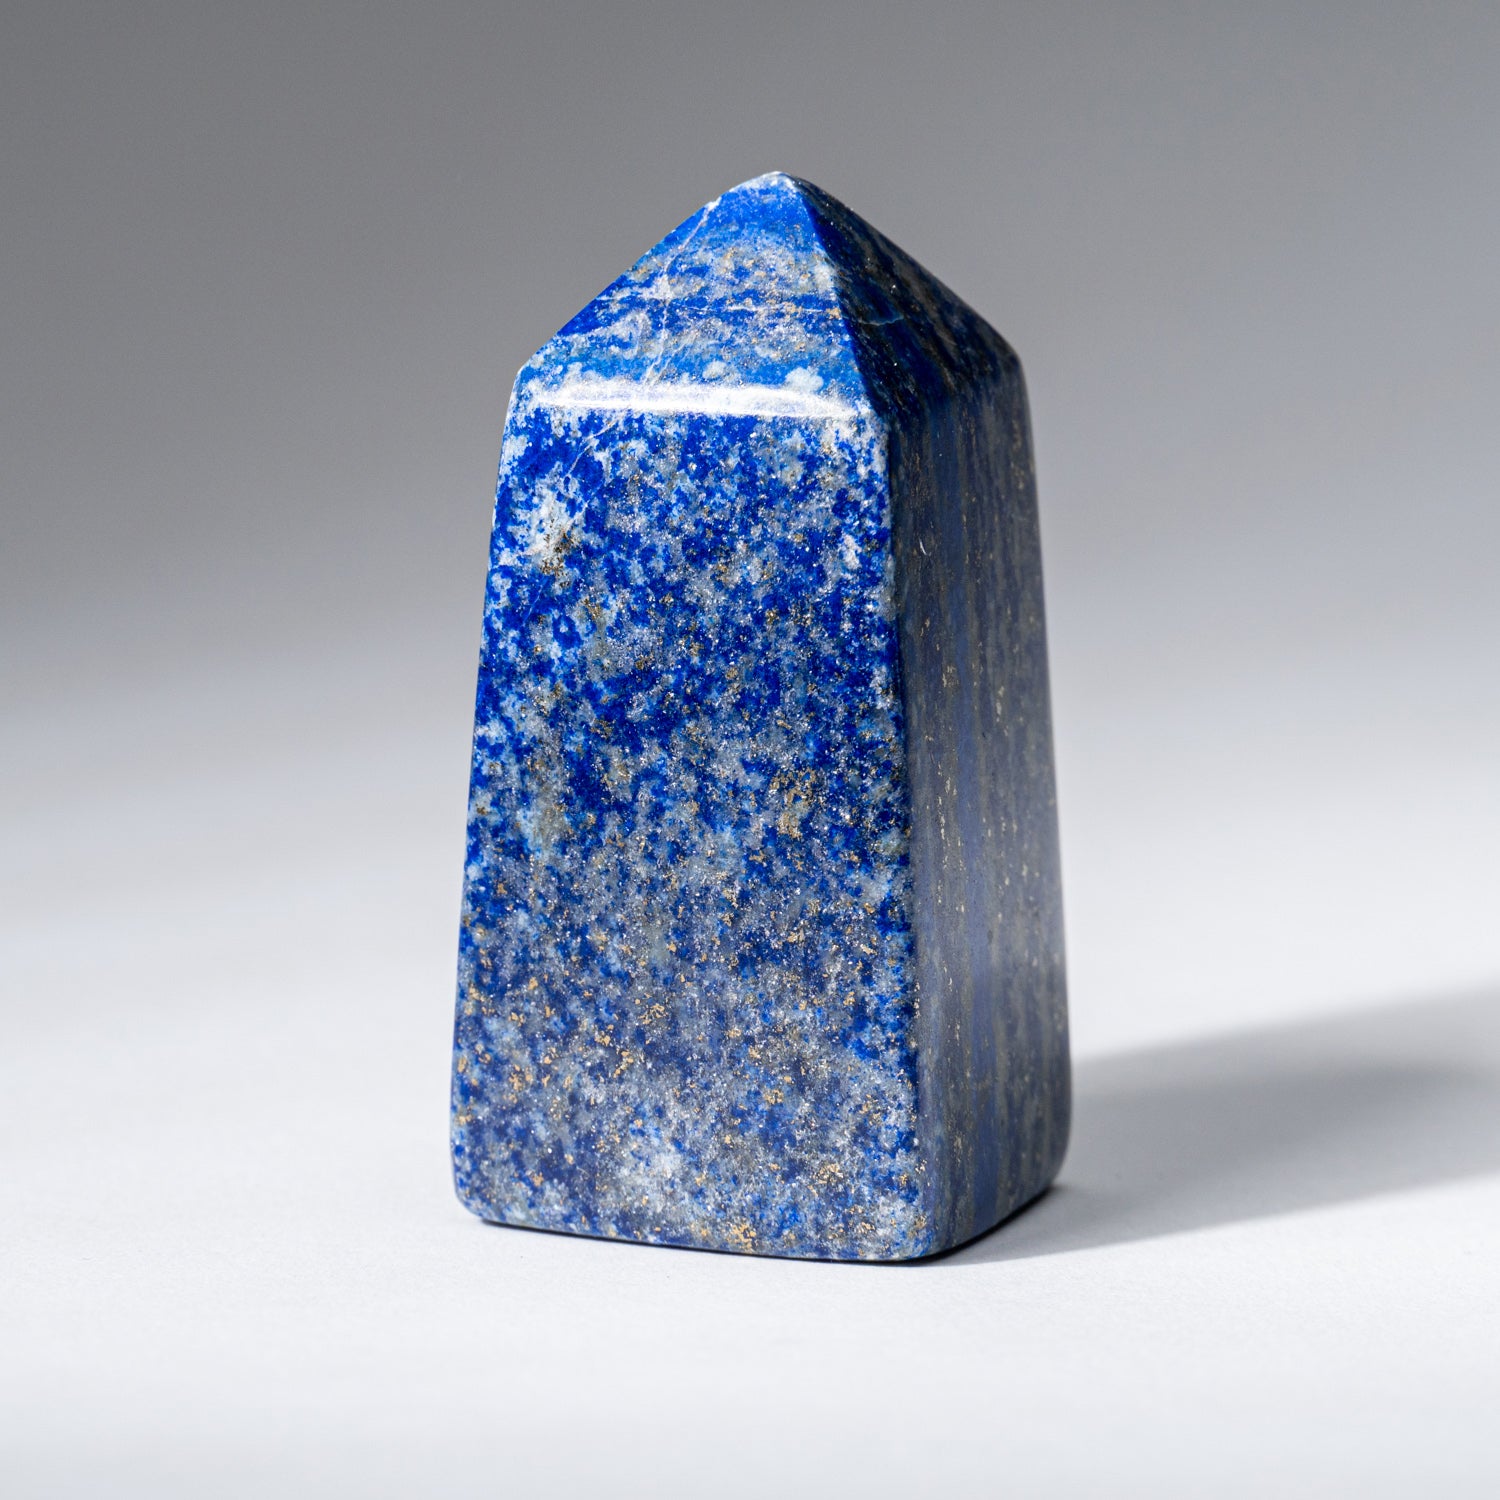 Polished Lapis Lazuli Obelisk from Afghanistan (112.4 grams)